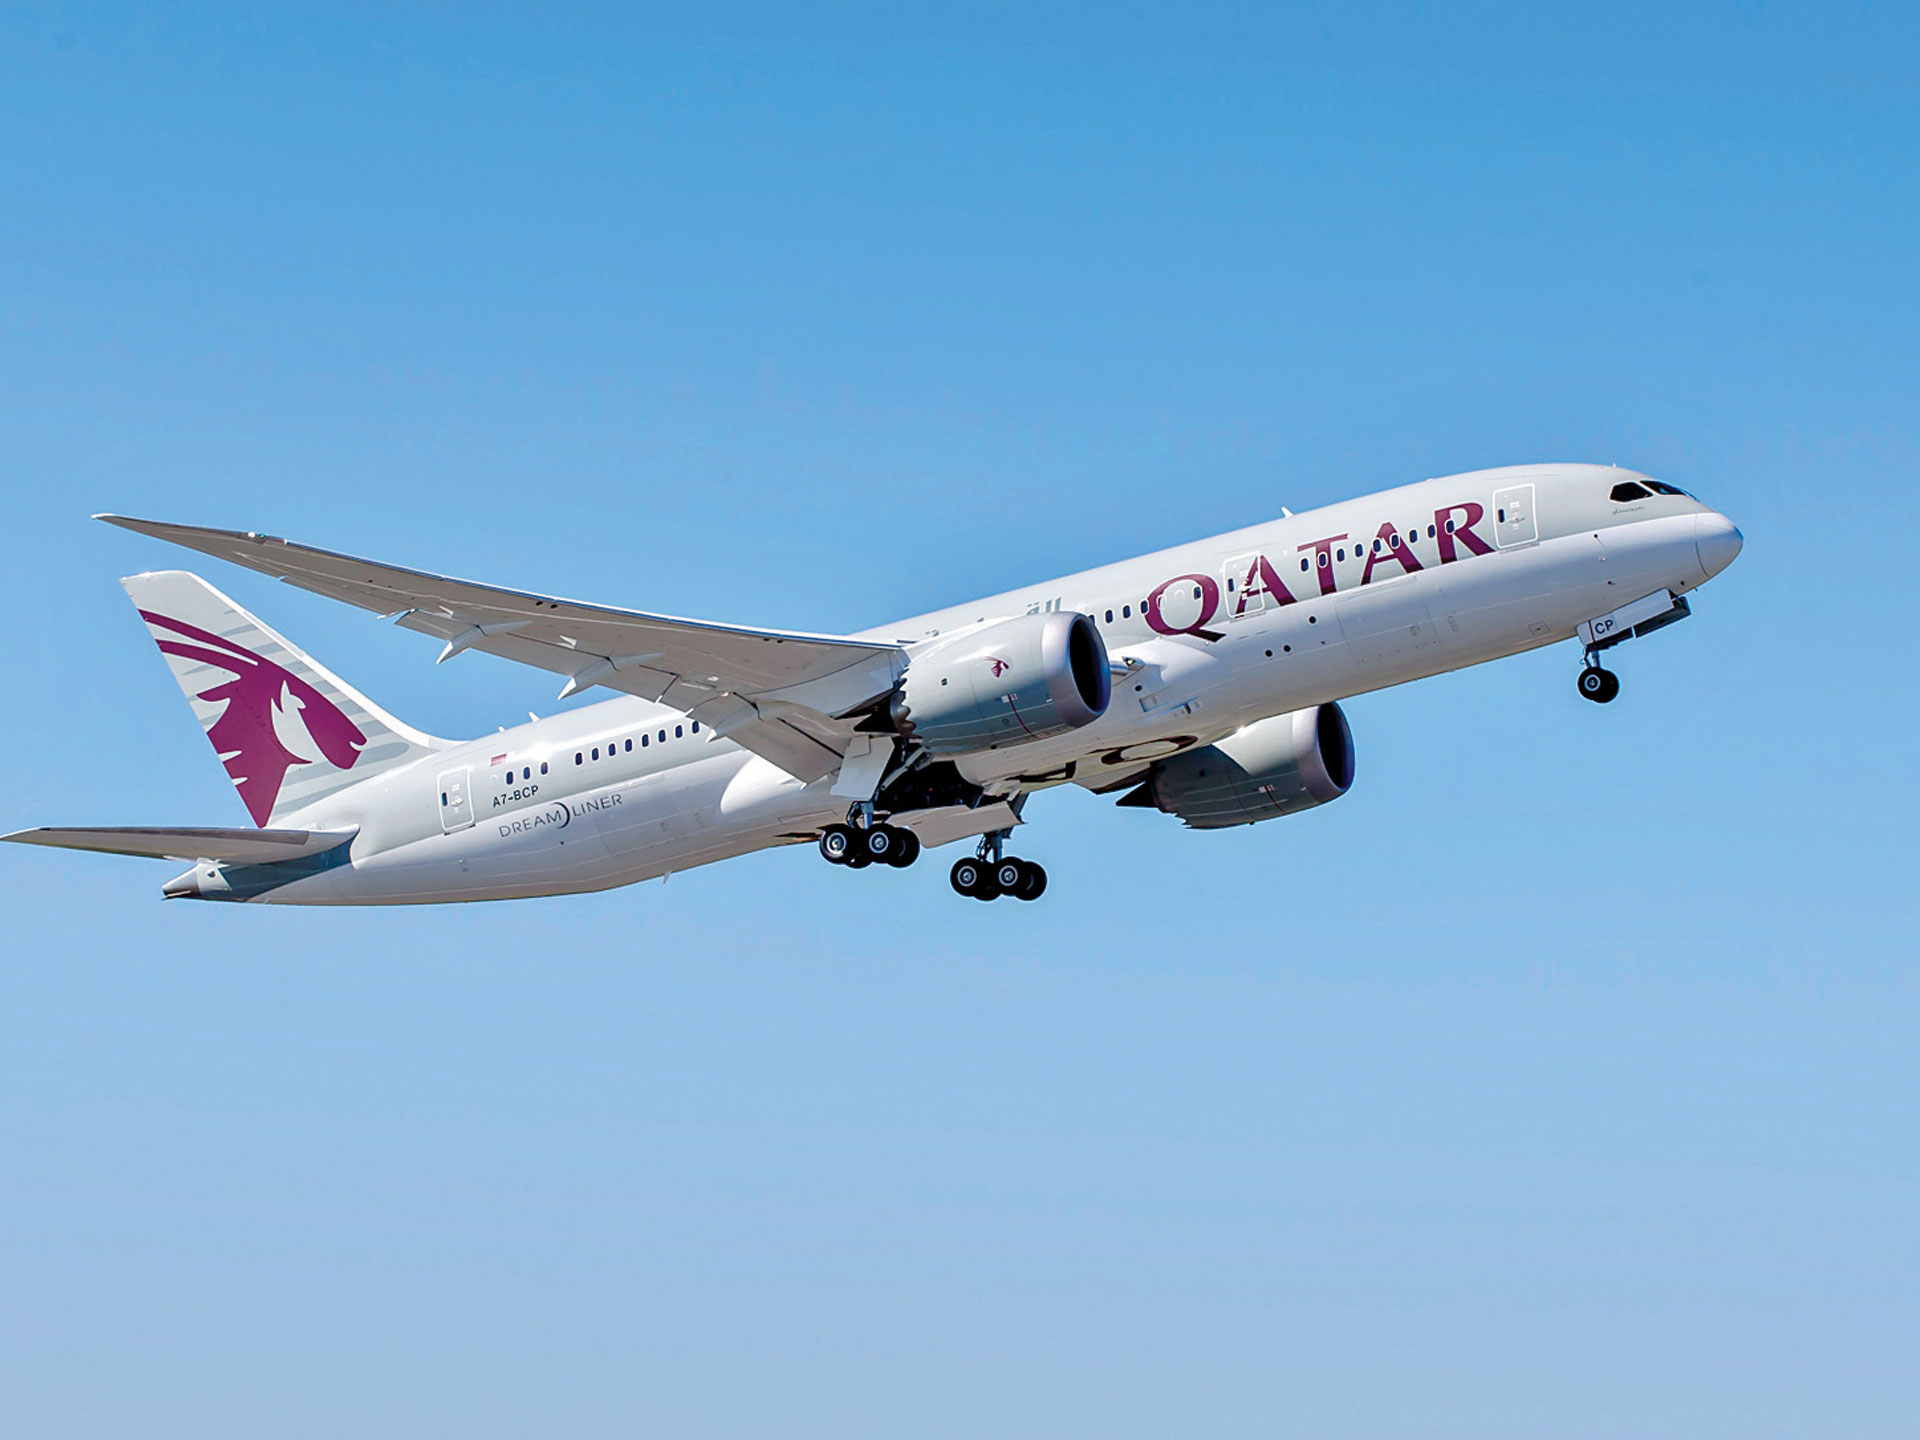 خطوات الاطلاع على قوانين الطيران وأنظمته عبر بوابة حكومي في قطر